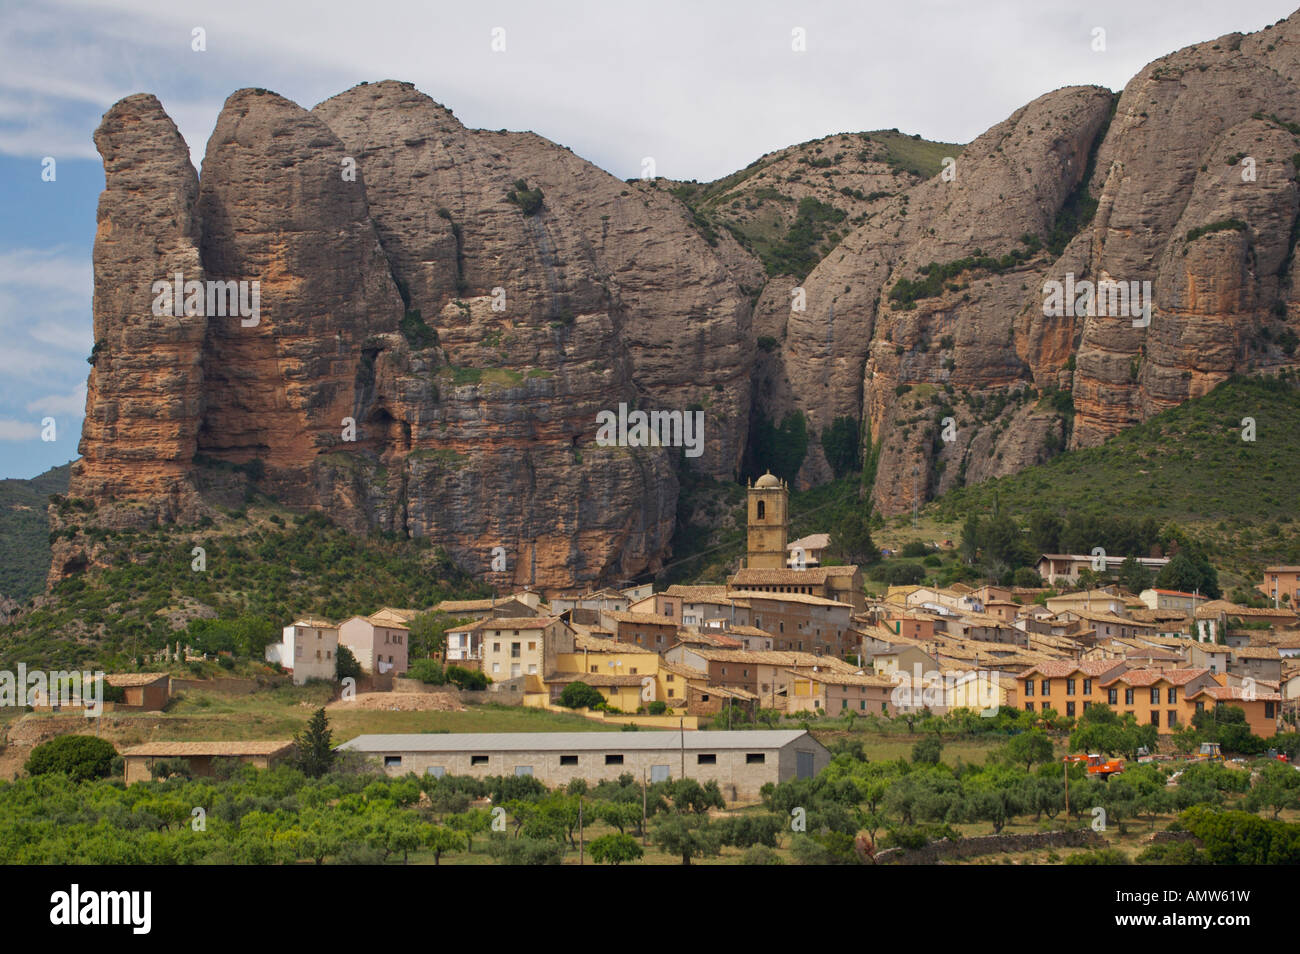 Village of Aguero under a red rock crag, Mallos de Riglos, Huesca, Aragon, Spain, Europe. Stock Photo